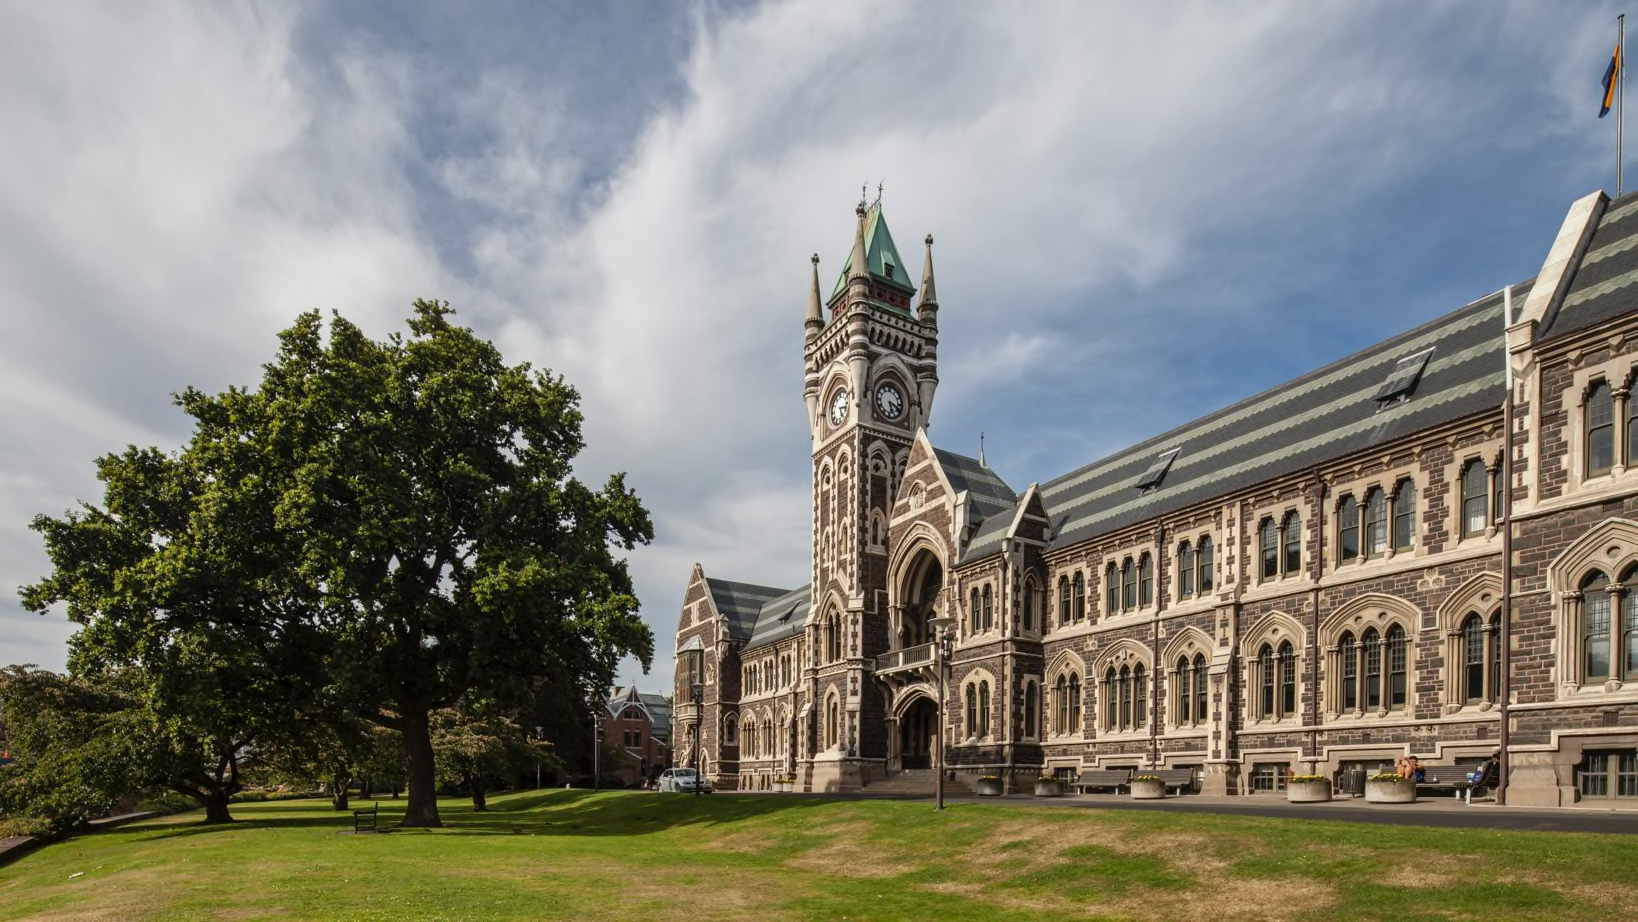 The University of Otago